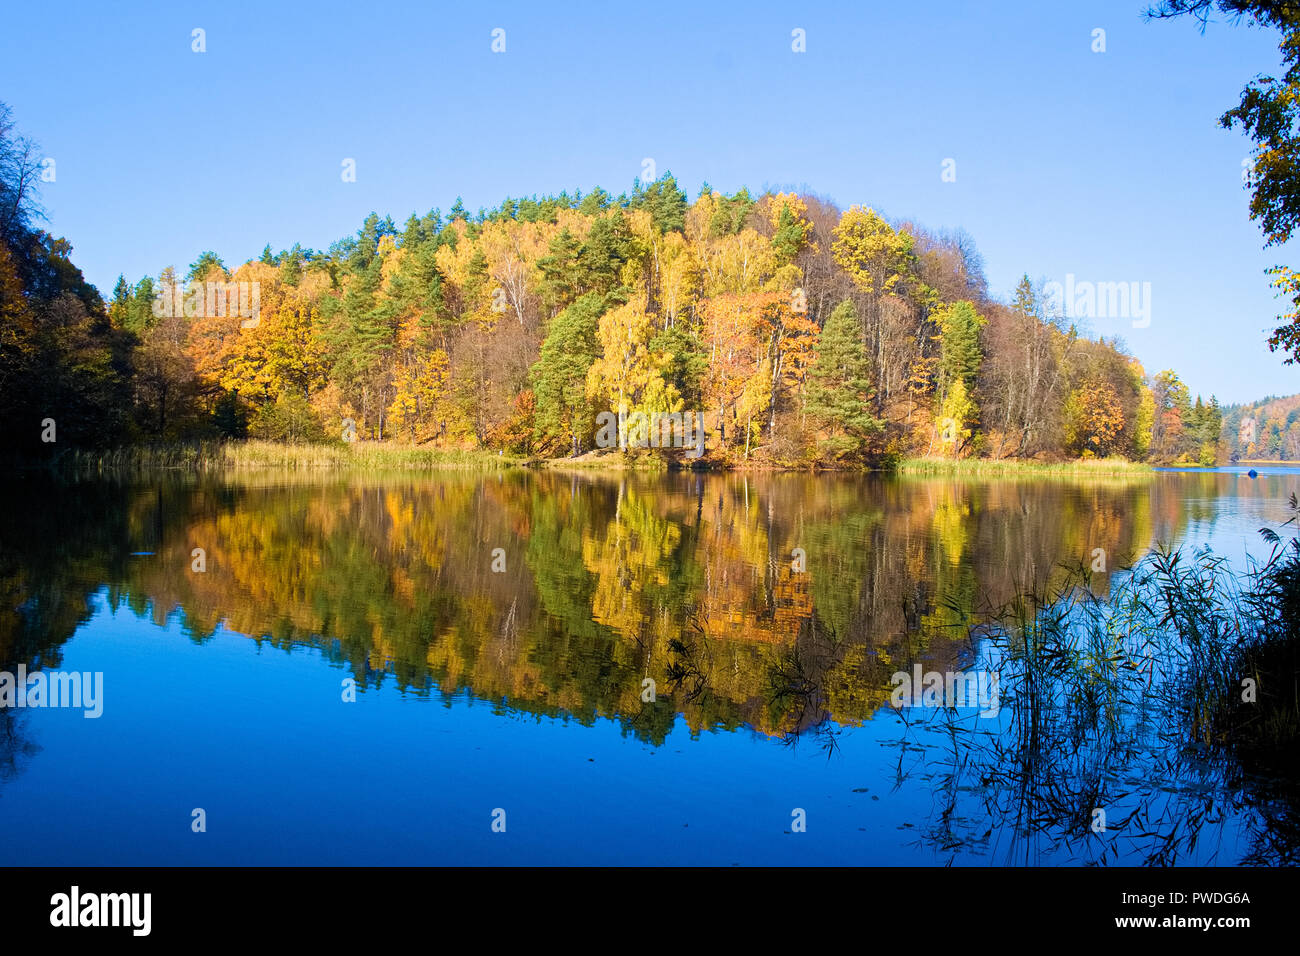 Hermoso colorido bosque de árboles en otoño reflejado en un lago azul como en un espejo Foto de stock